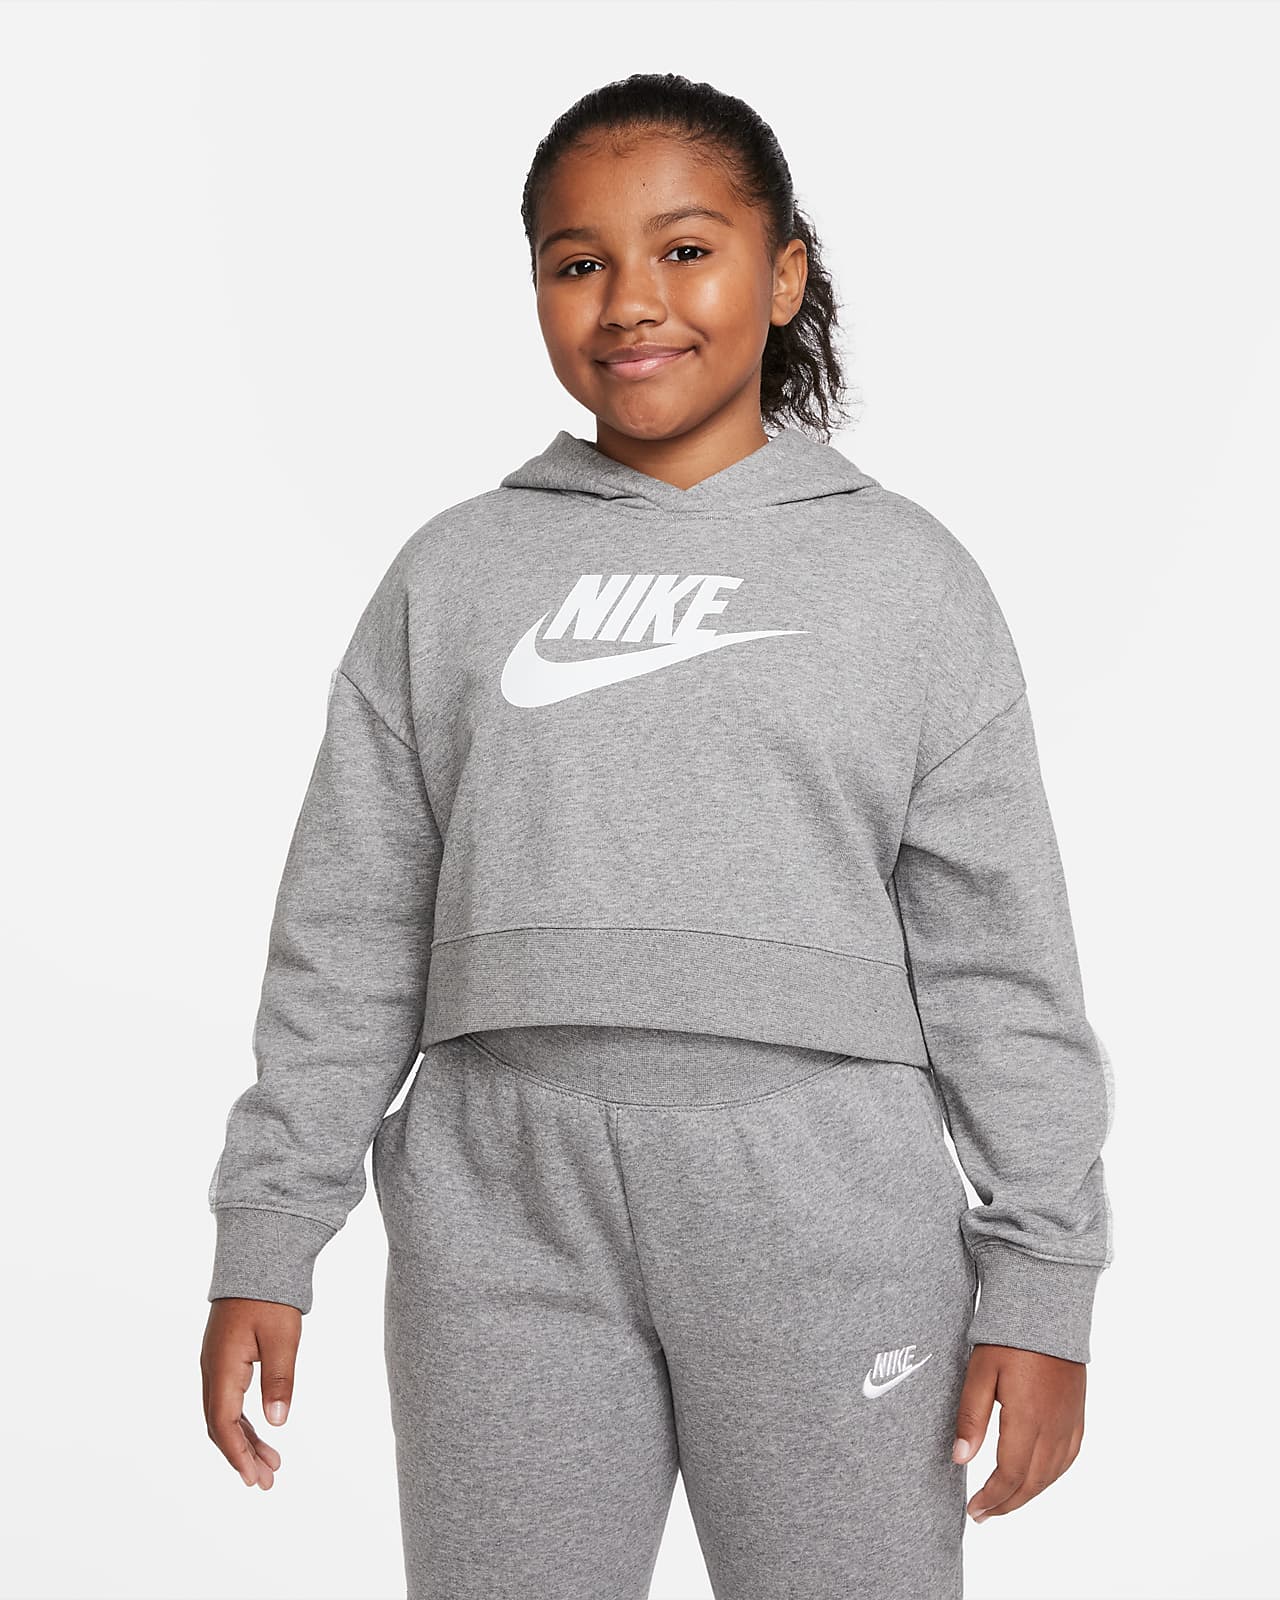 Μπλούζα με κουκούλα crop από ύφασμα French Terry Nike Sportswear Club για μεγάλα κορίτσια (μεγαλύτερο μέγεθος)